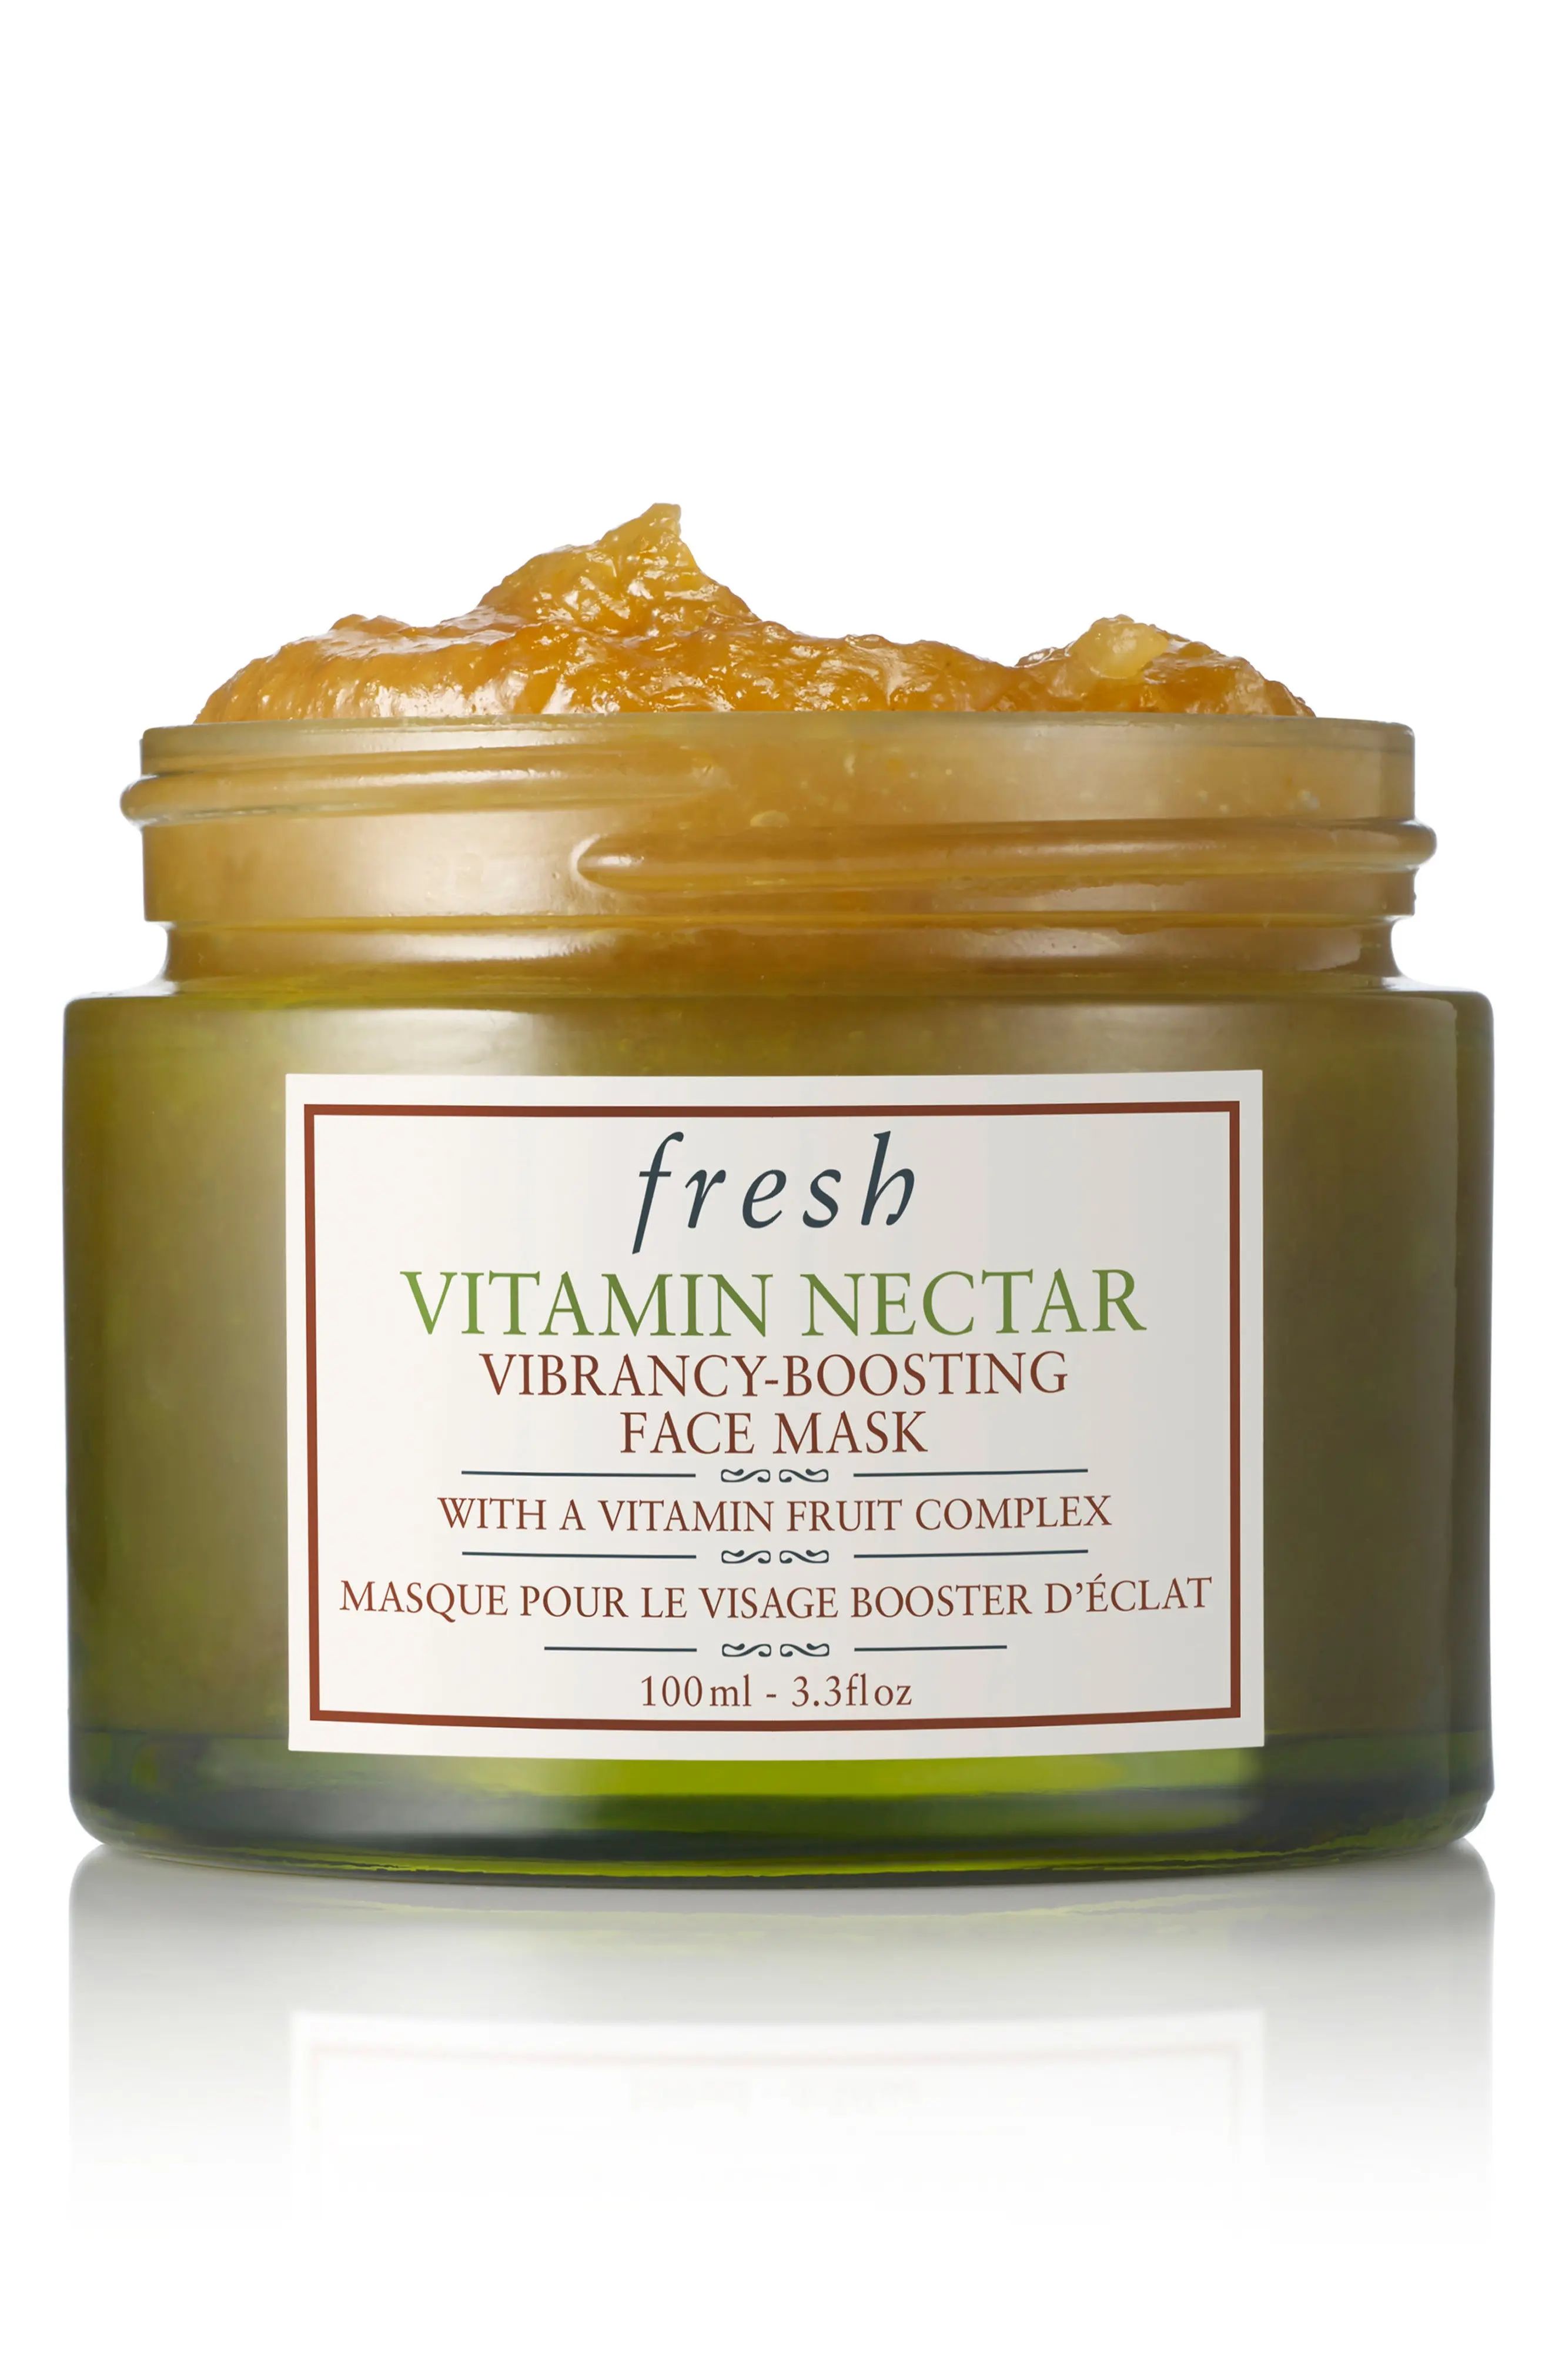 Vitamin Nectar Vibrancy-Boosting Face Mask | Nordstrom